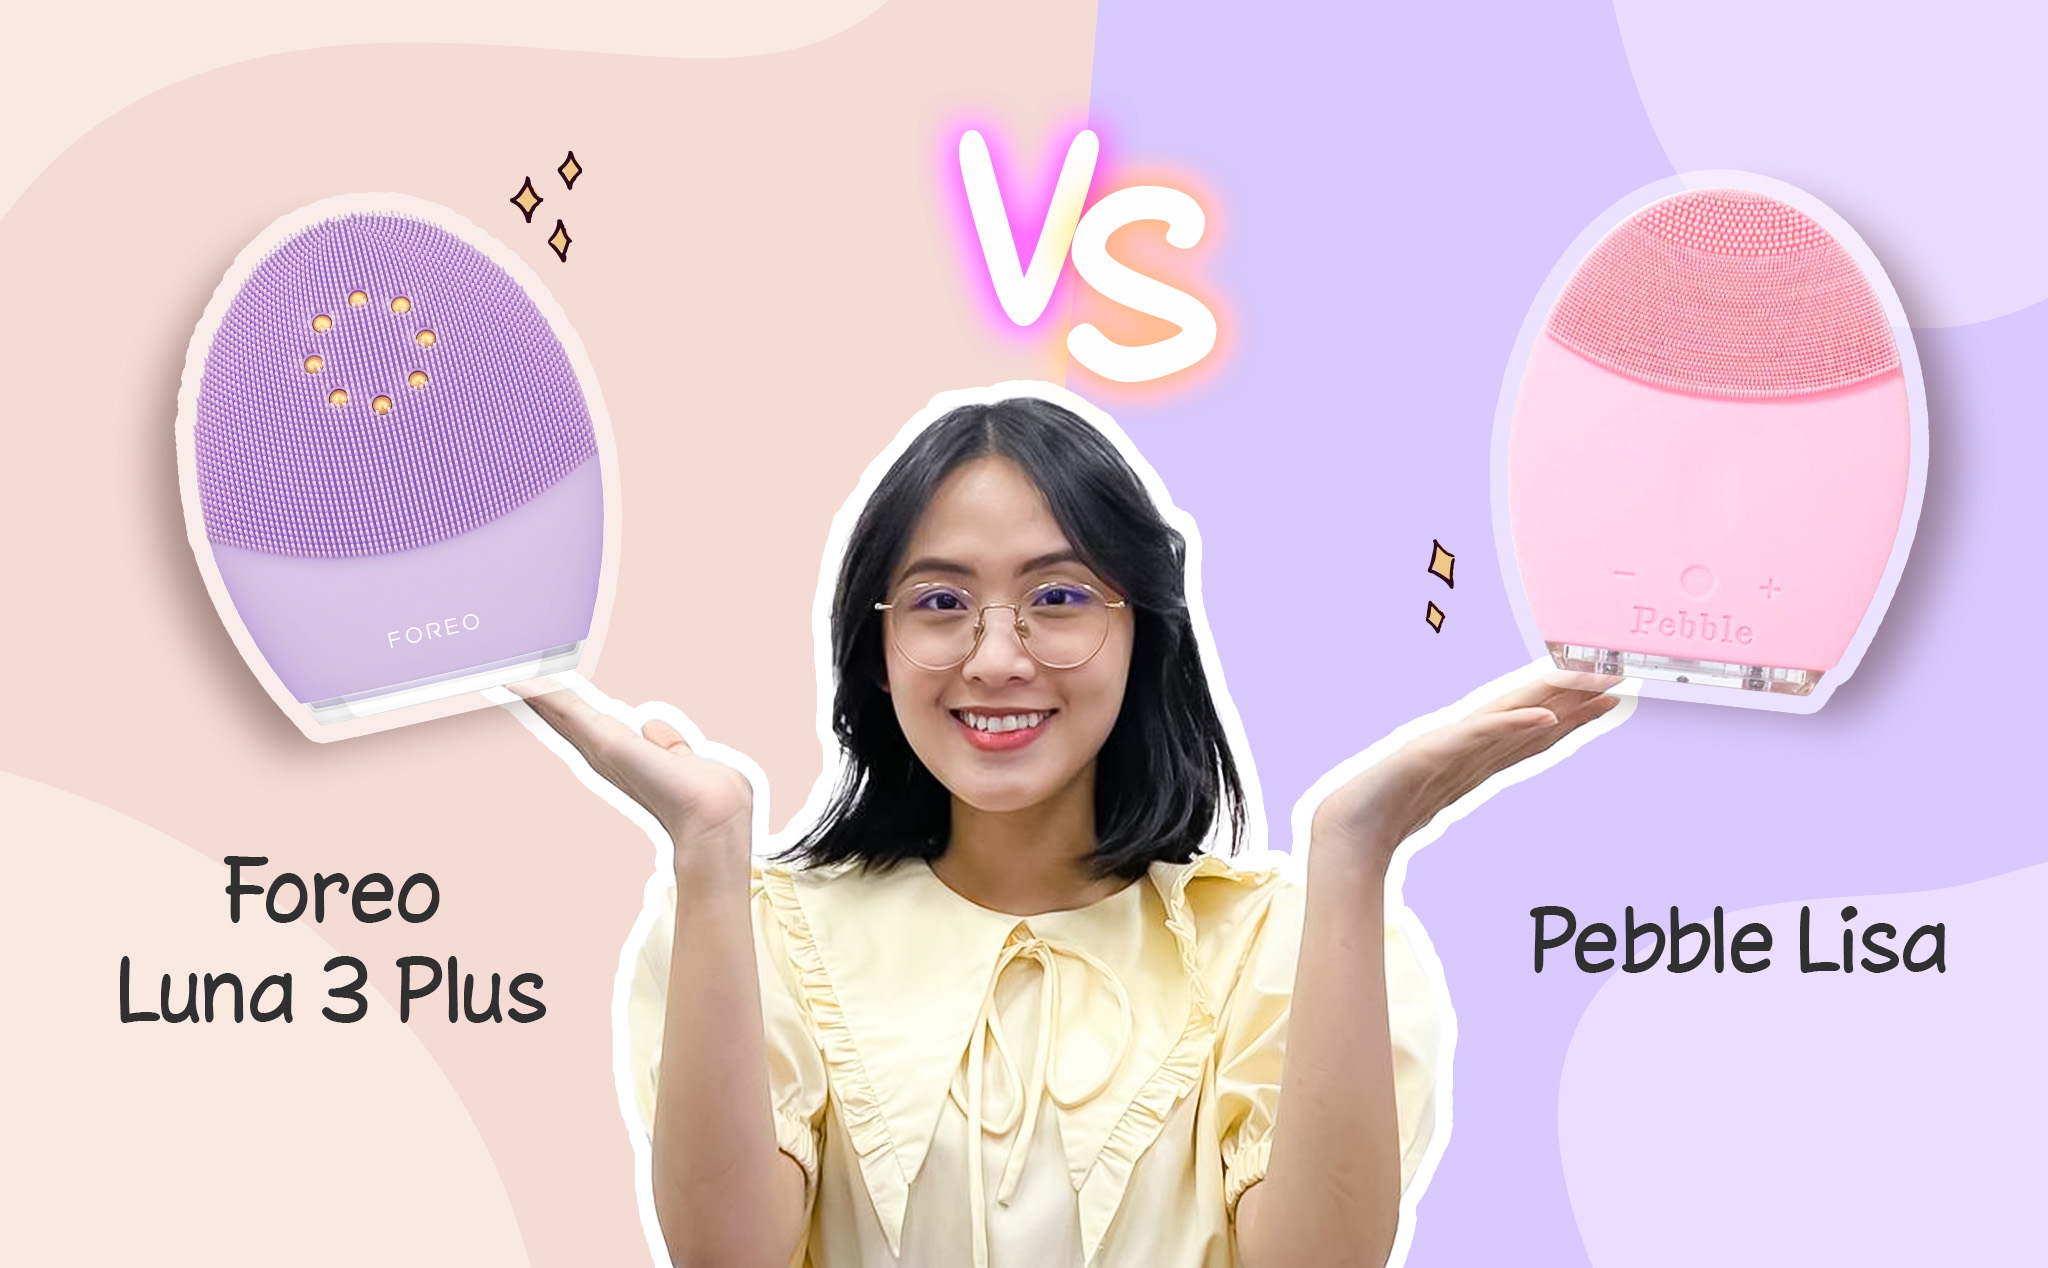 So sánh máy rửa mặt 229 đô và 700k: Foreo Luna 3 Plus vs Pebble Lisa